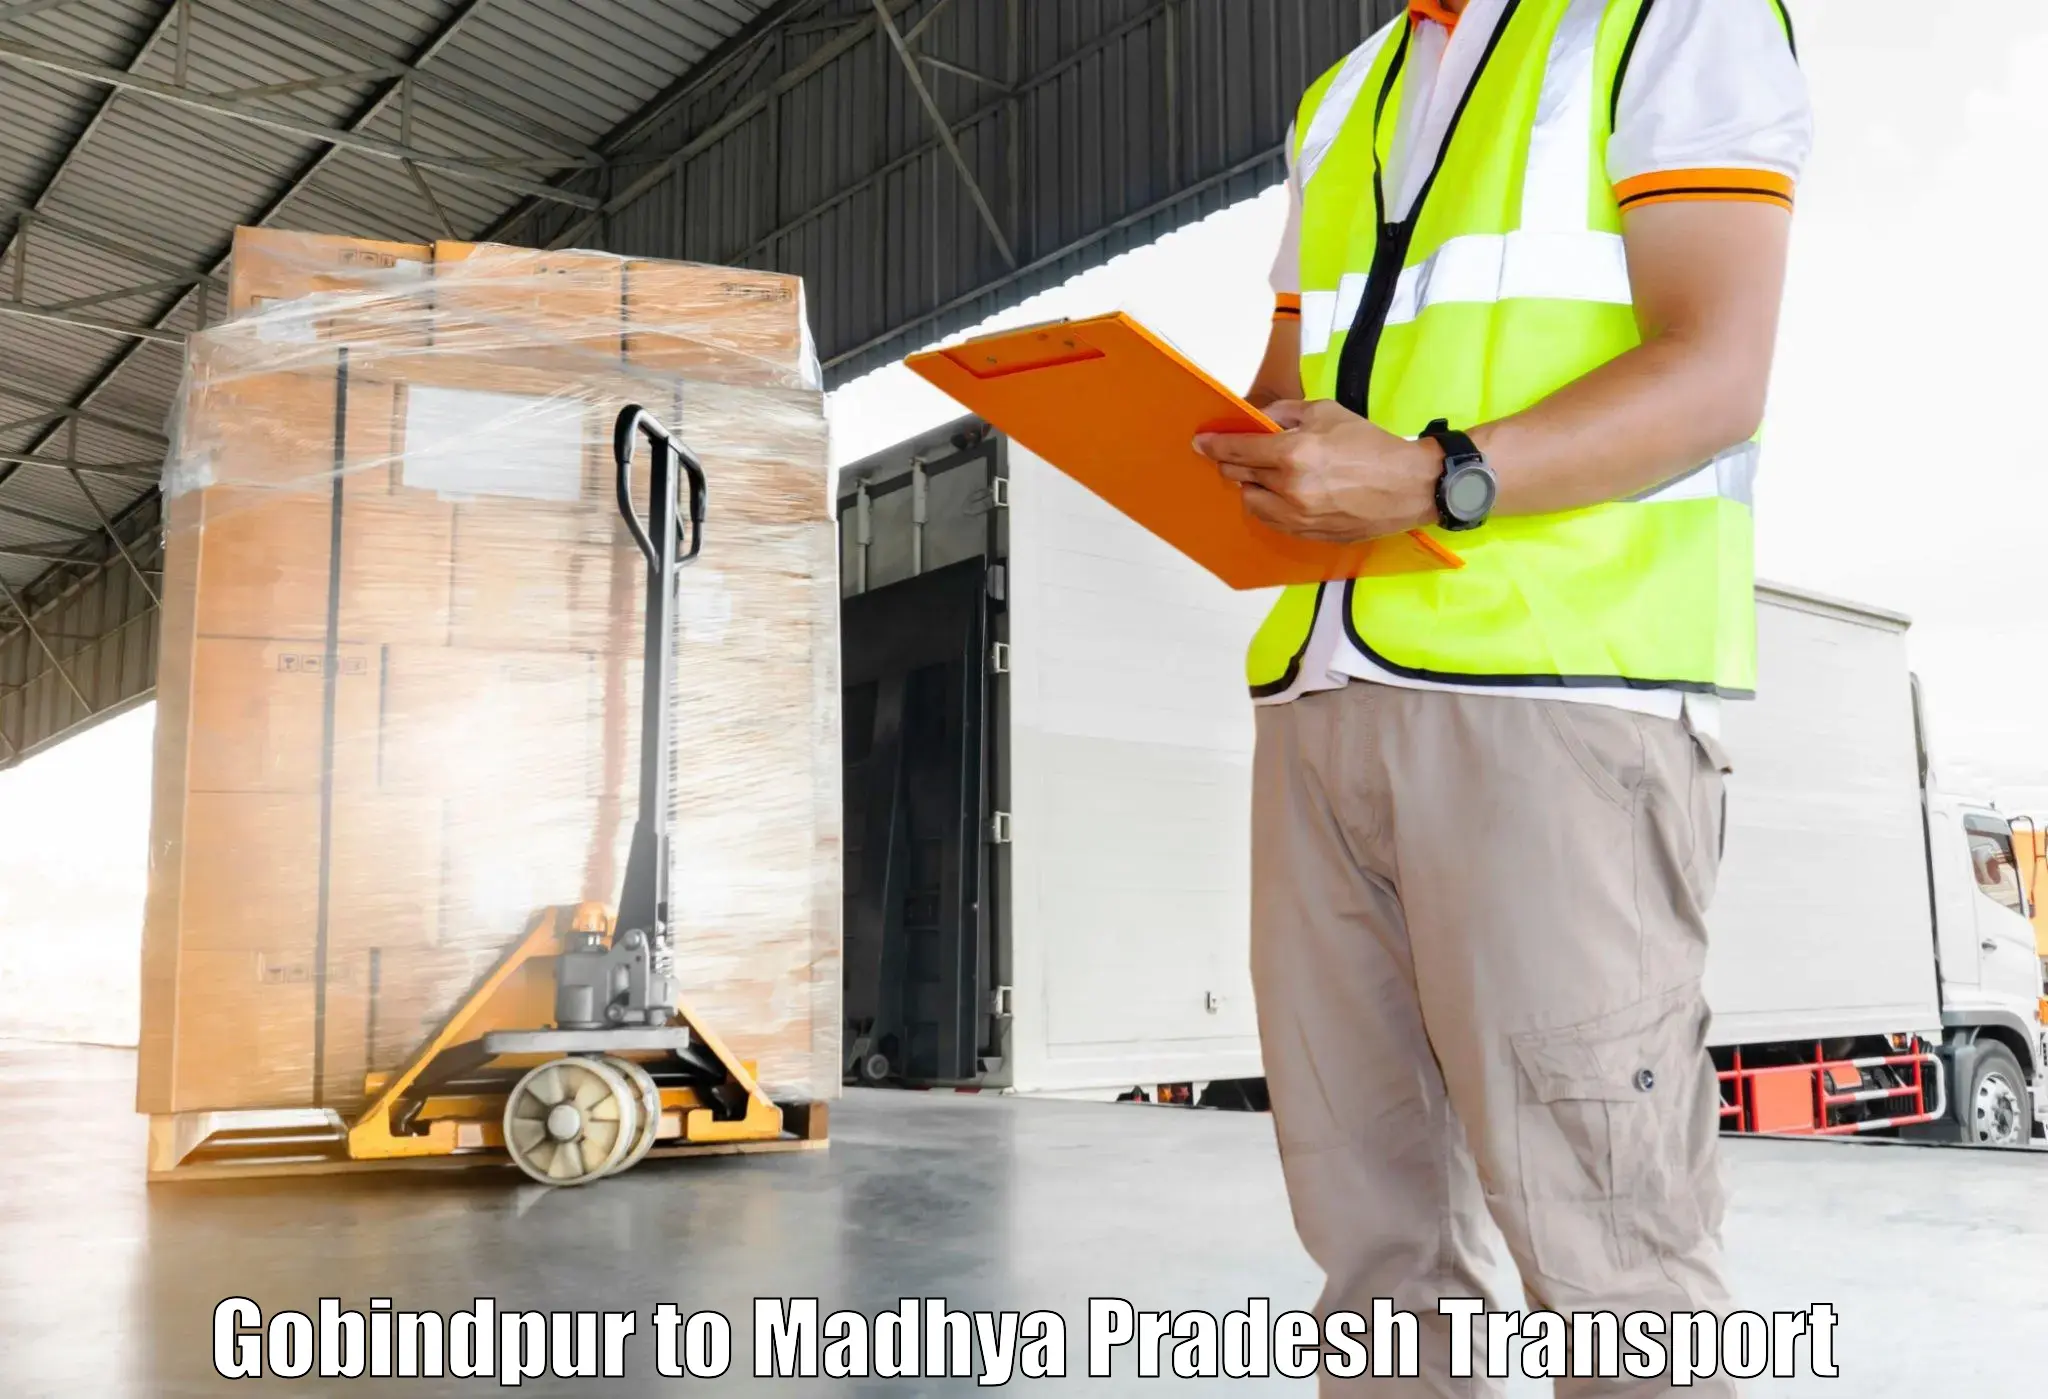 Shipping partner Gobindpur to Ashta